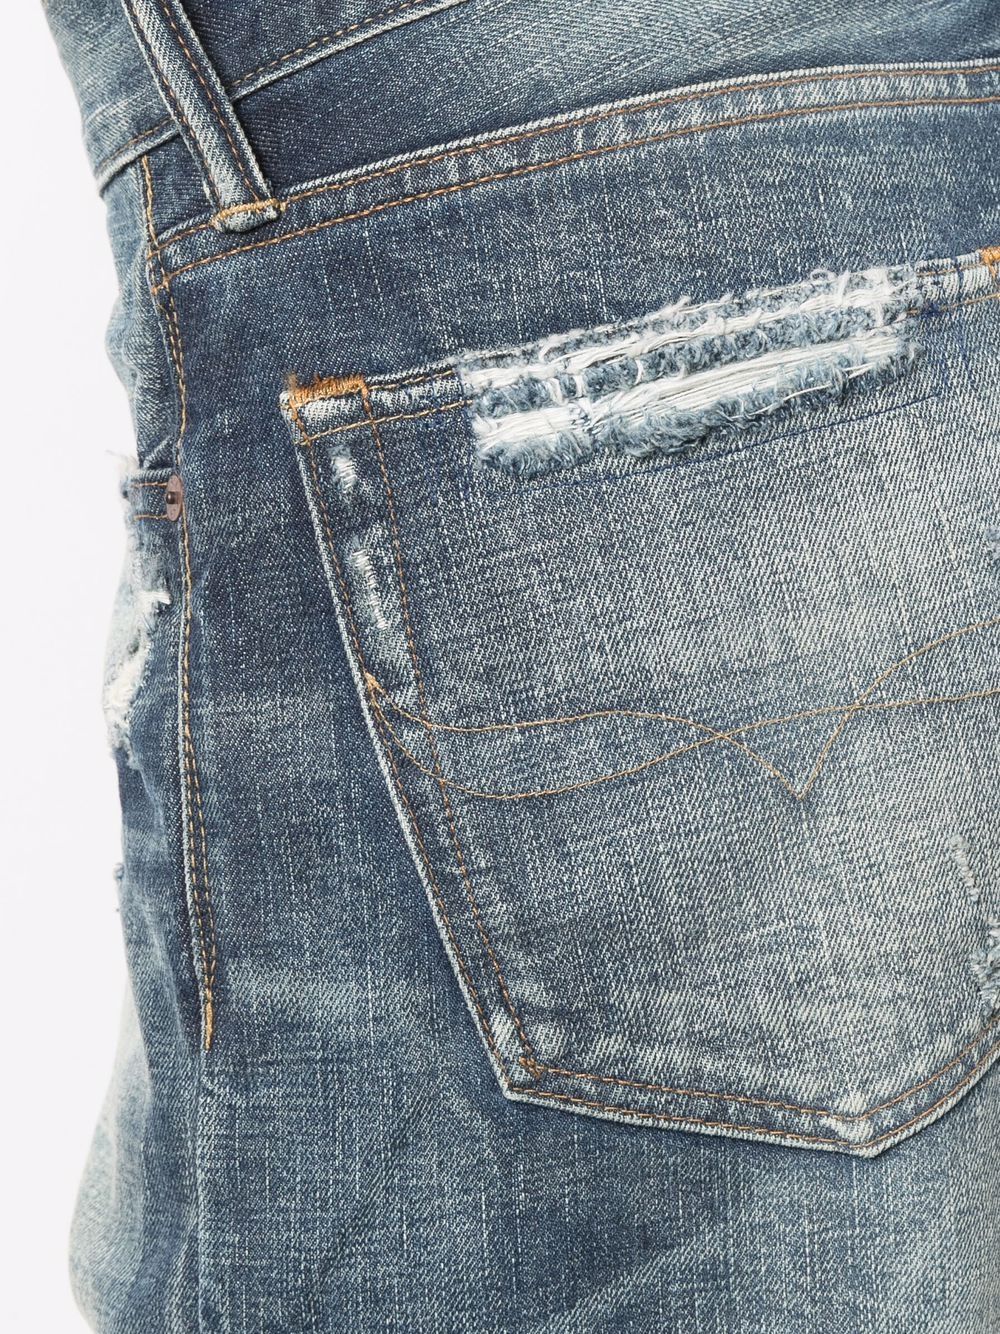 фото Polo ralph lauren прямые джинсы средней посадки